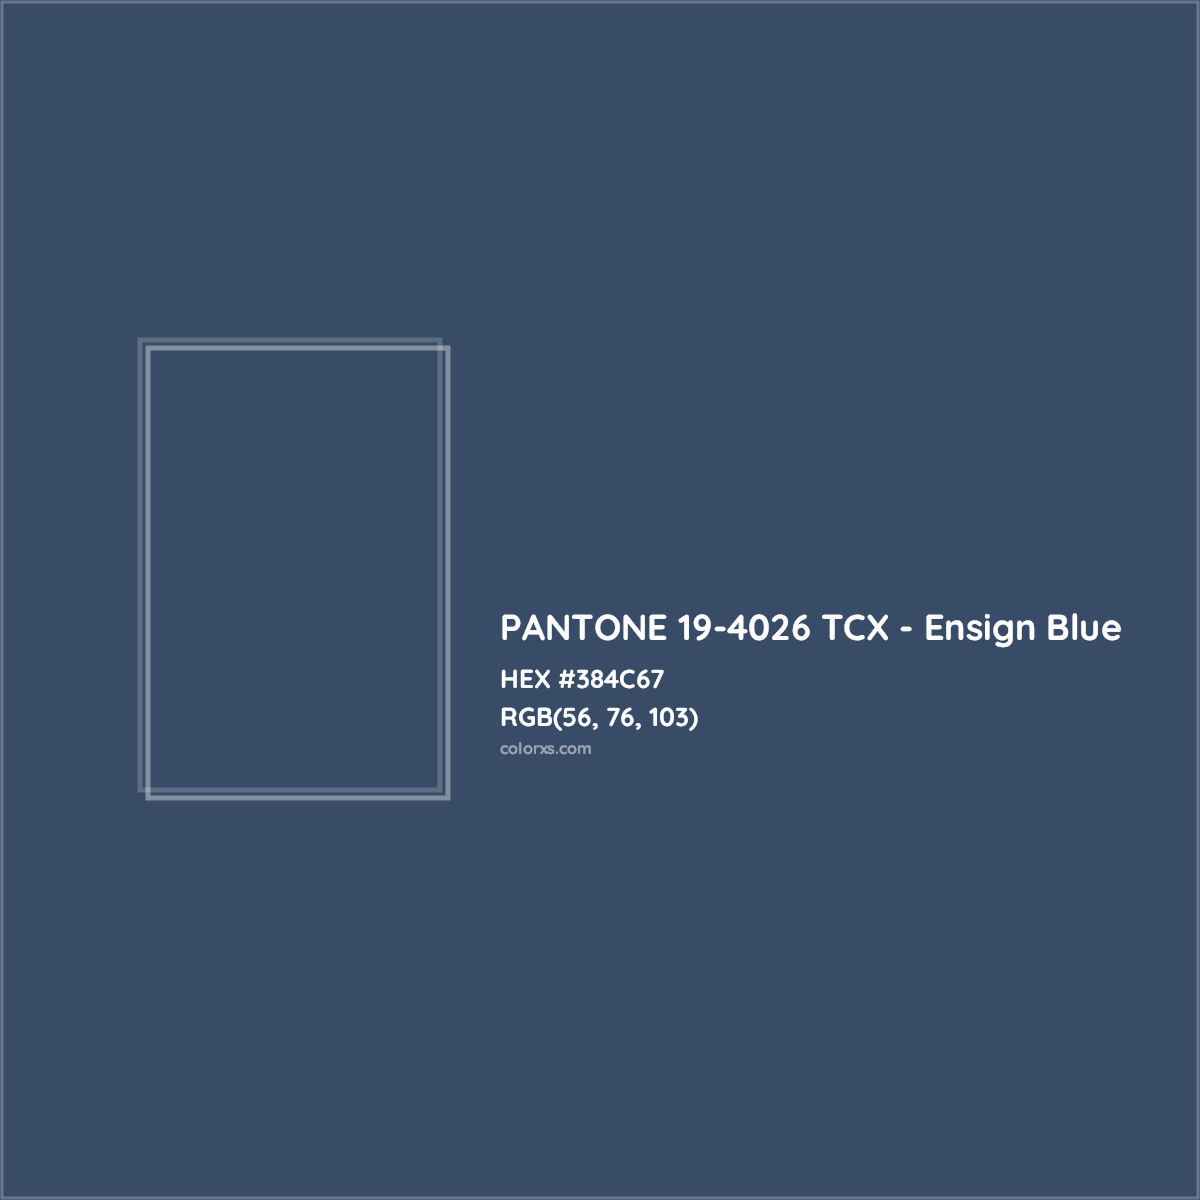 HEX #384C67 PANTONE 19-4026 TCX - Ensign Blue CMS Pantone TCX - Color Code